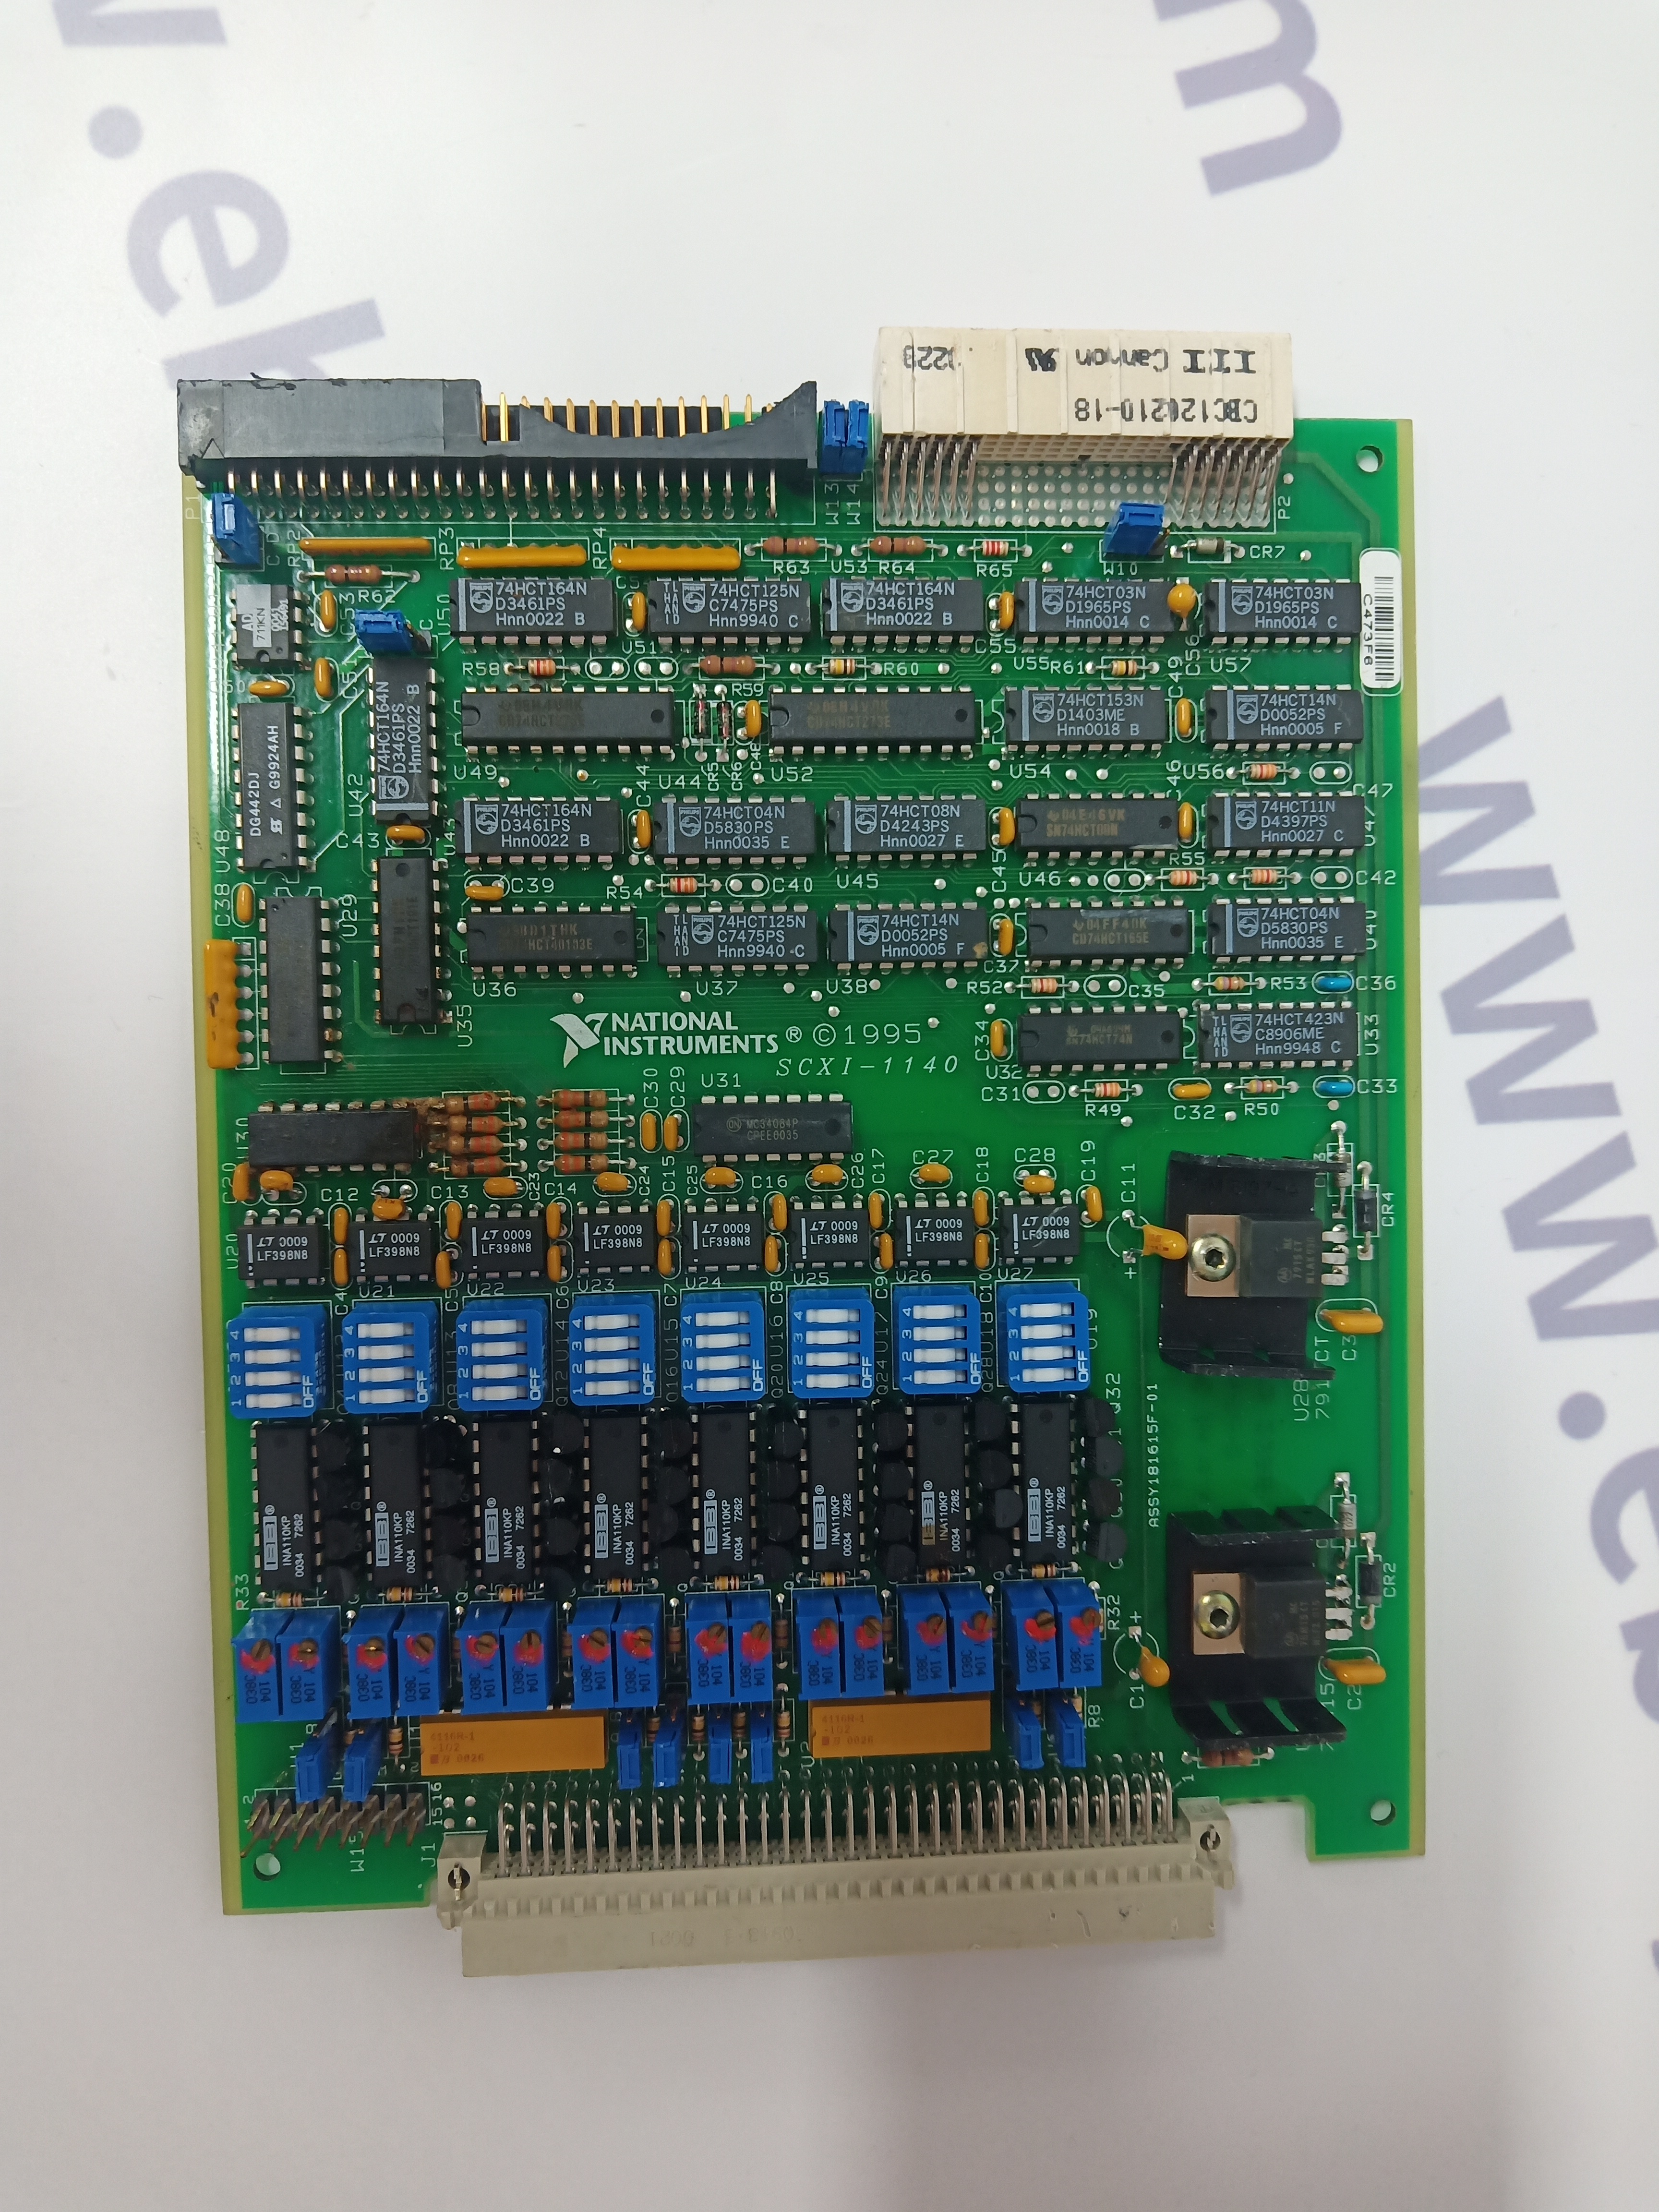 Moduli per sistemi di controllo automazione WOODWARD 9907-167 in stock